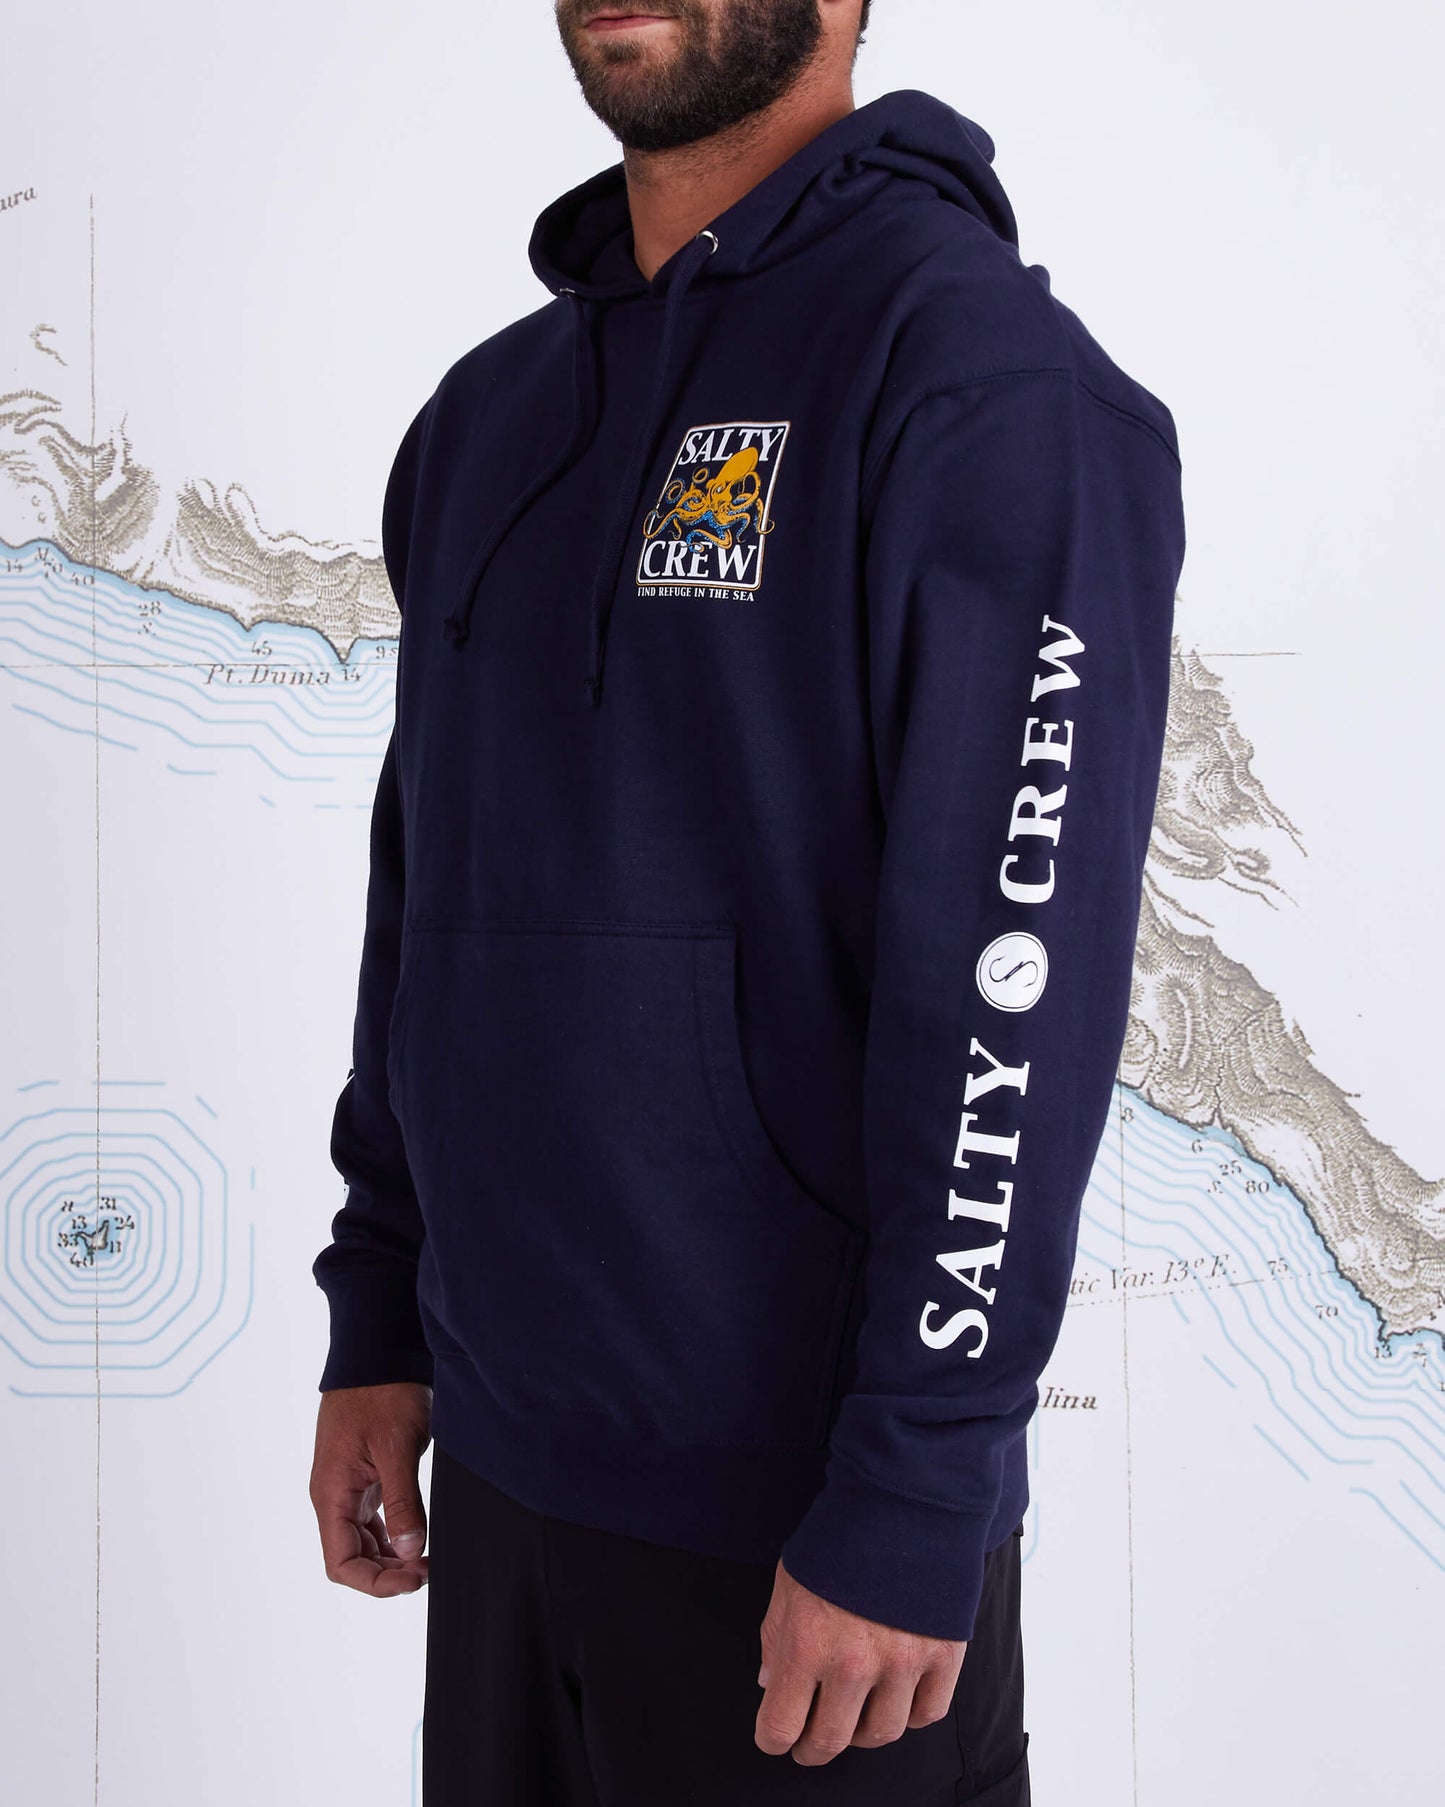 Salty crew Men's Sweatshirts INK SLINGER FLEECE in Navy